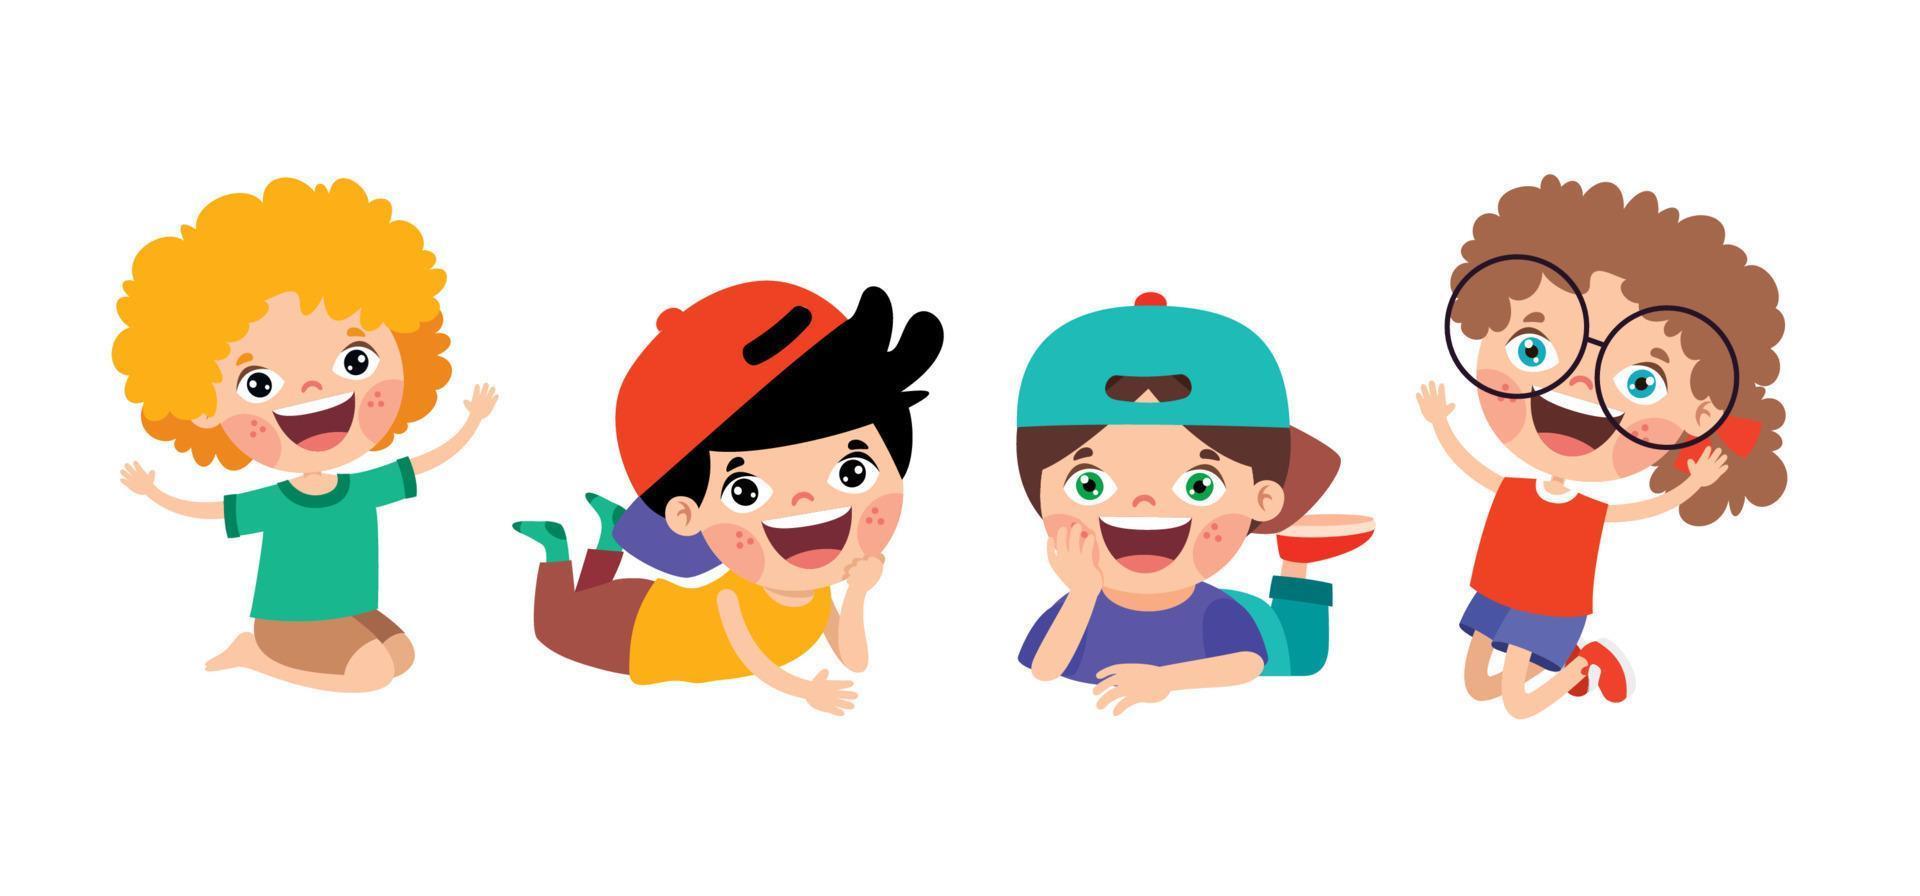 personajes de niños de dibujos animados felices sentados vector